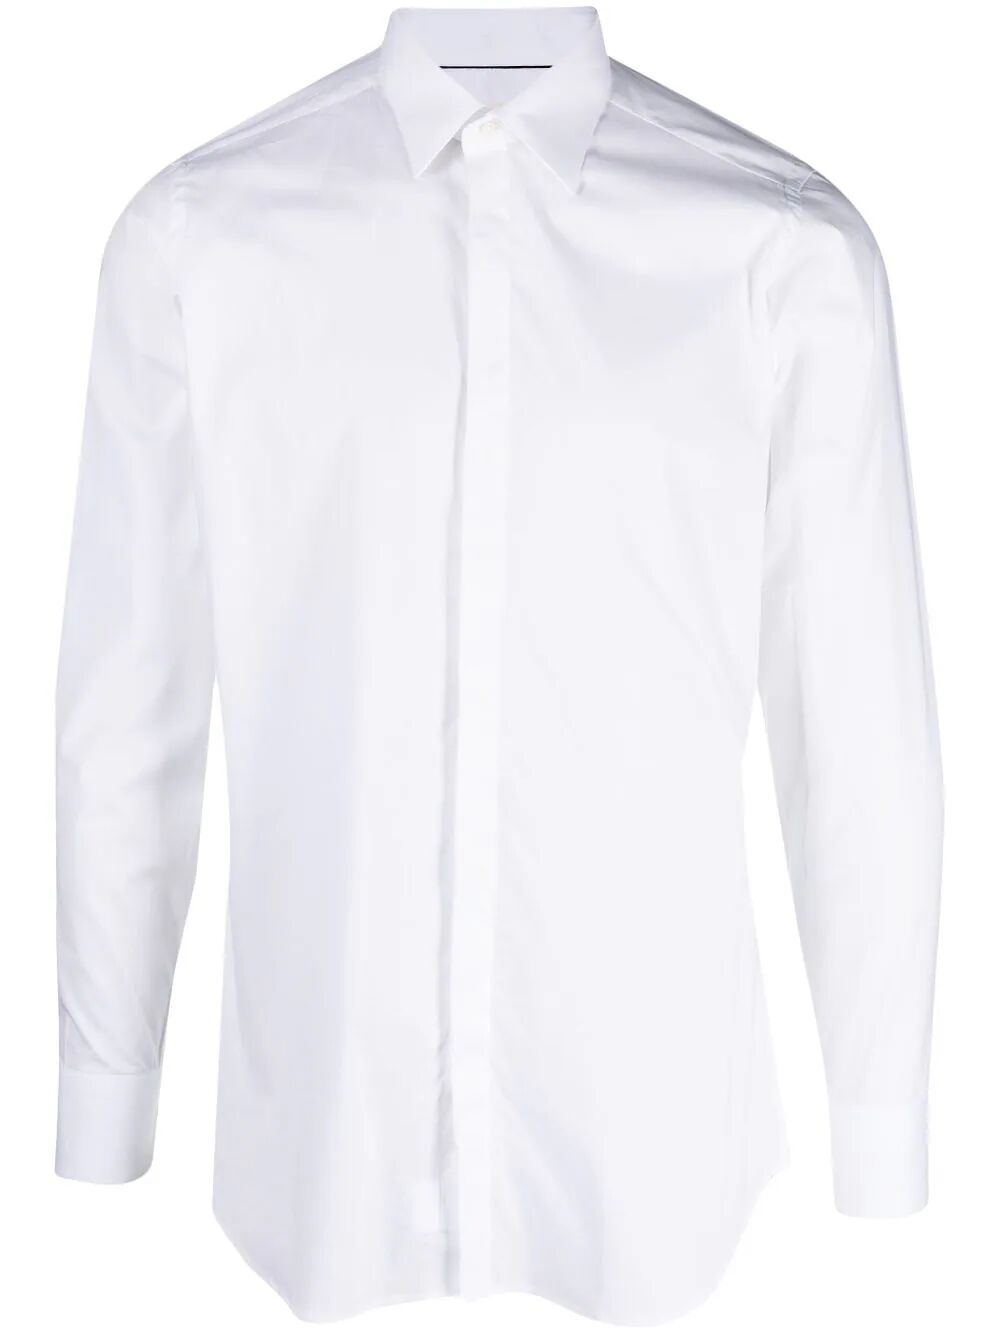 Tintoria Mattei Shirt In White